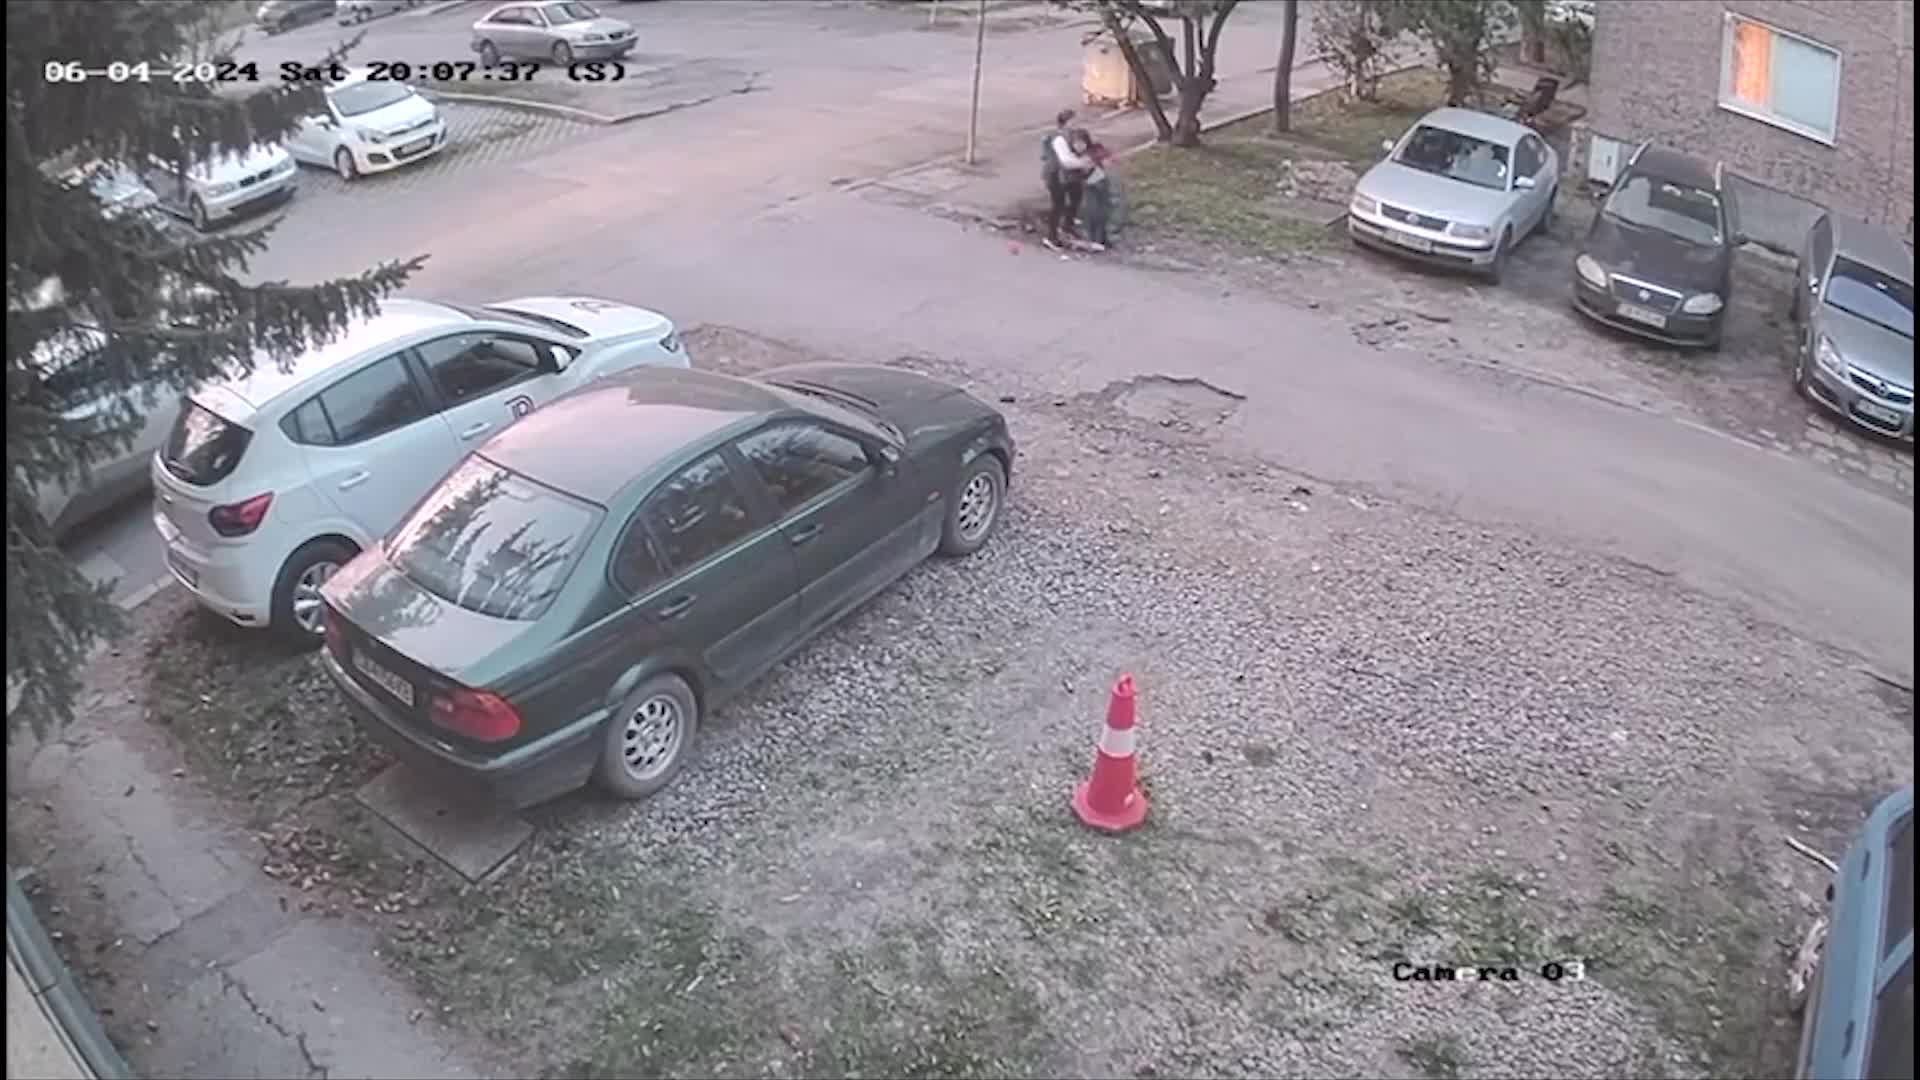 Шофьор блъсна майка и дете в София и избяга